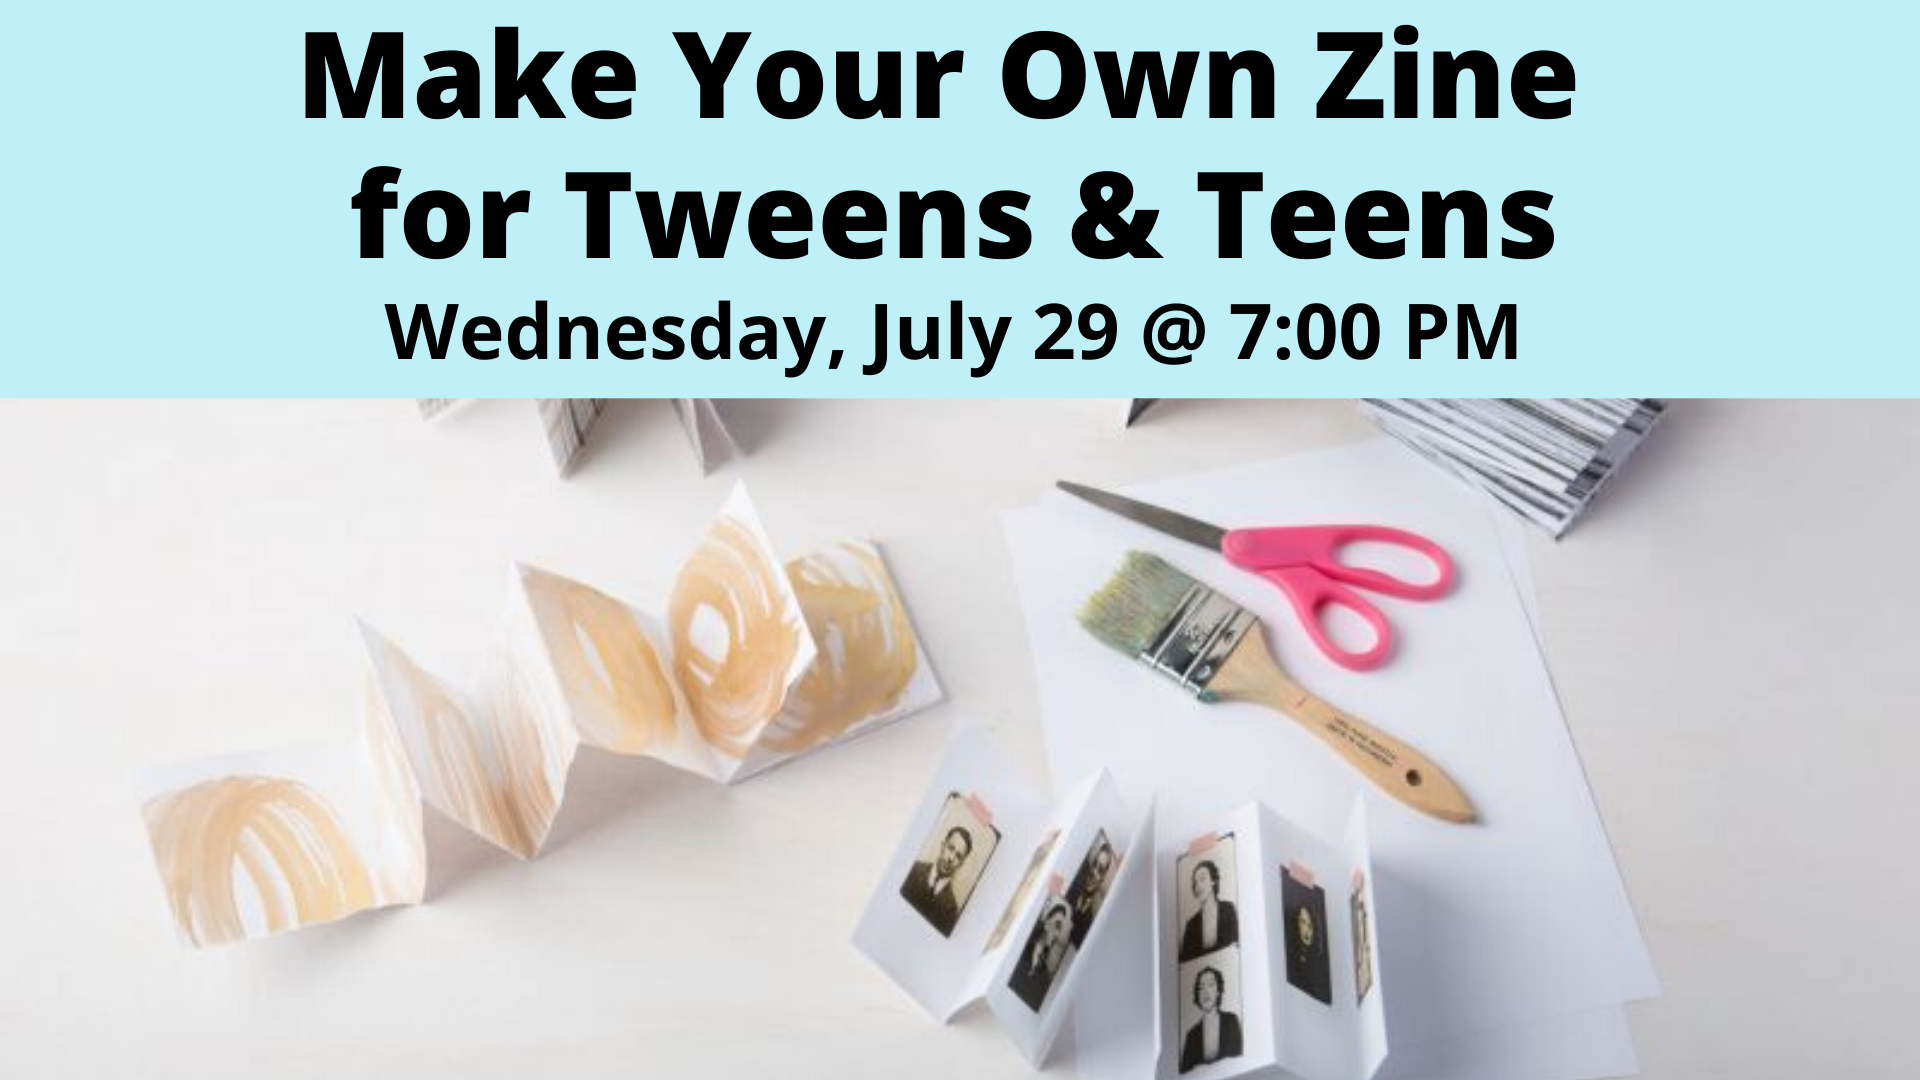 Make Your Own Zine for Tweens & Teens